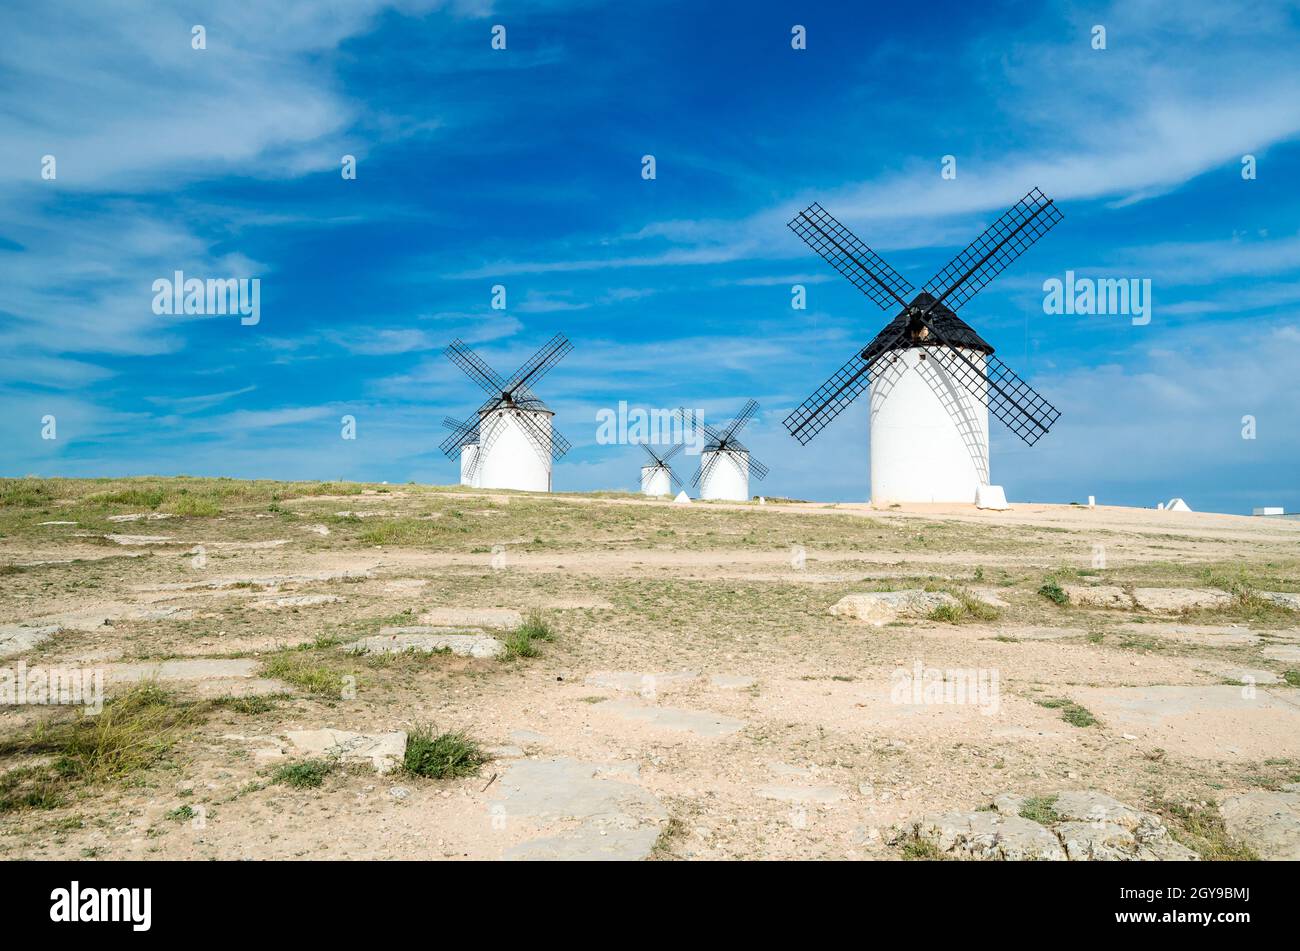 Mulini a vento in campo de Crippana, Spagna, sulla Via Don Chisciotte, basata su un carattere letterario, si riferisce al percorso seguito dal protagonista del Foto Stock